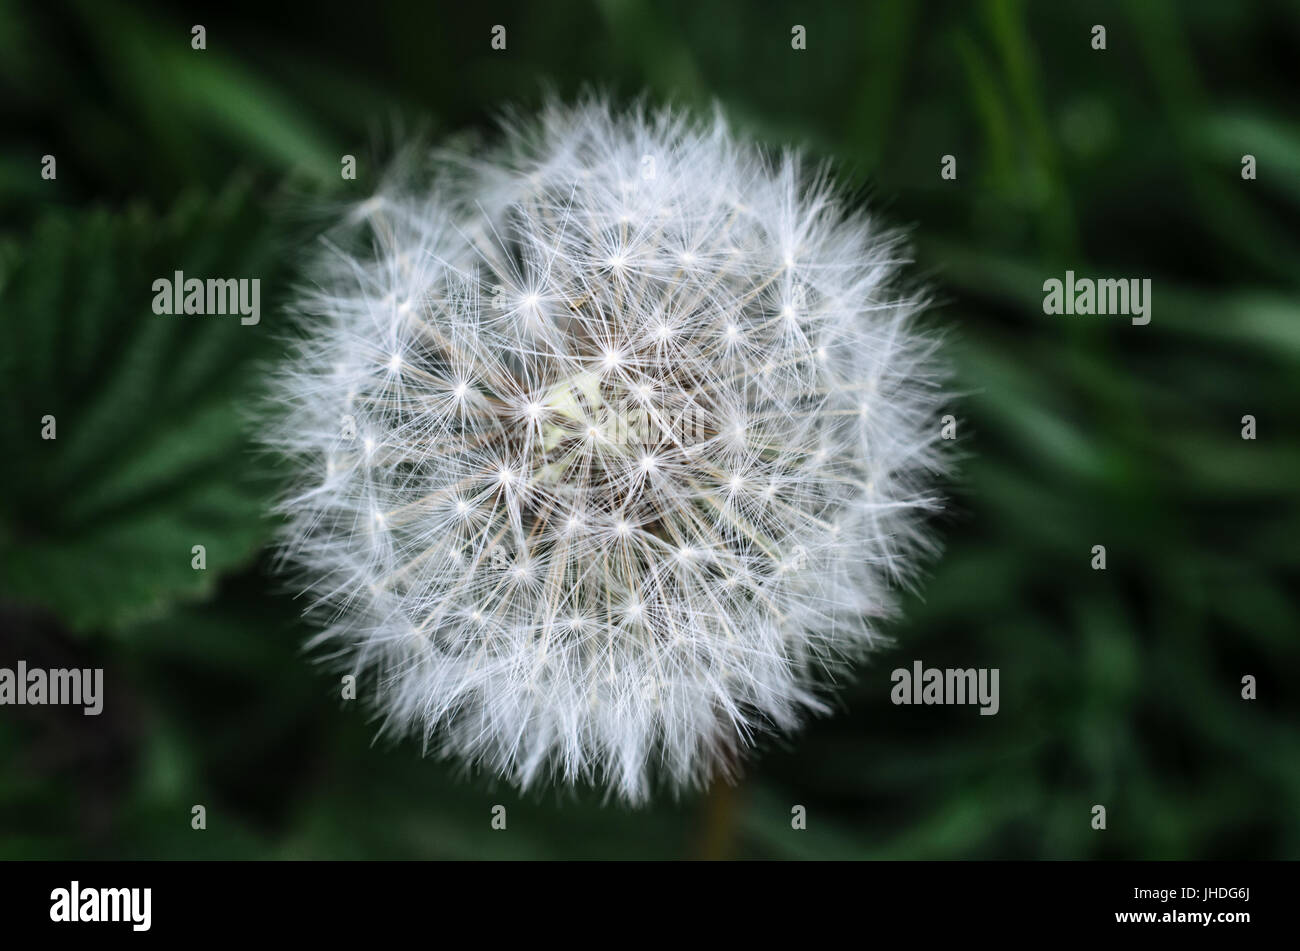 Nahaufnahme von einer weißen Blume Löwenzahn Uhr Kopf in einer natürlichen Umgebung mit dunkelgrünen Wald Laub im soft-Fokus-Hintergrund. Stockfoto